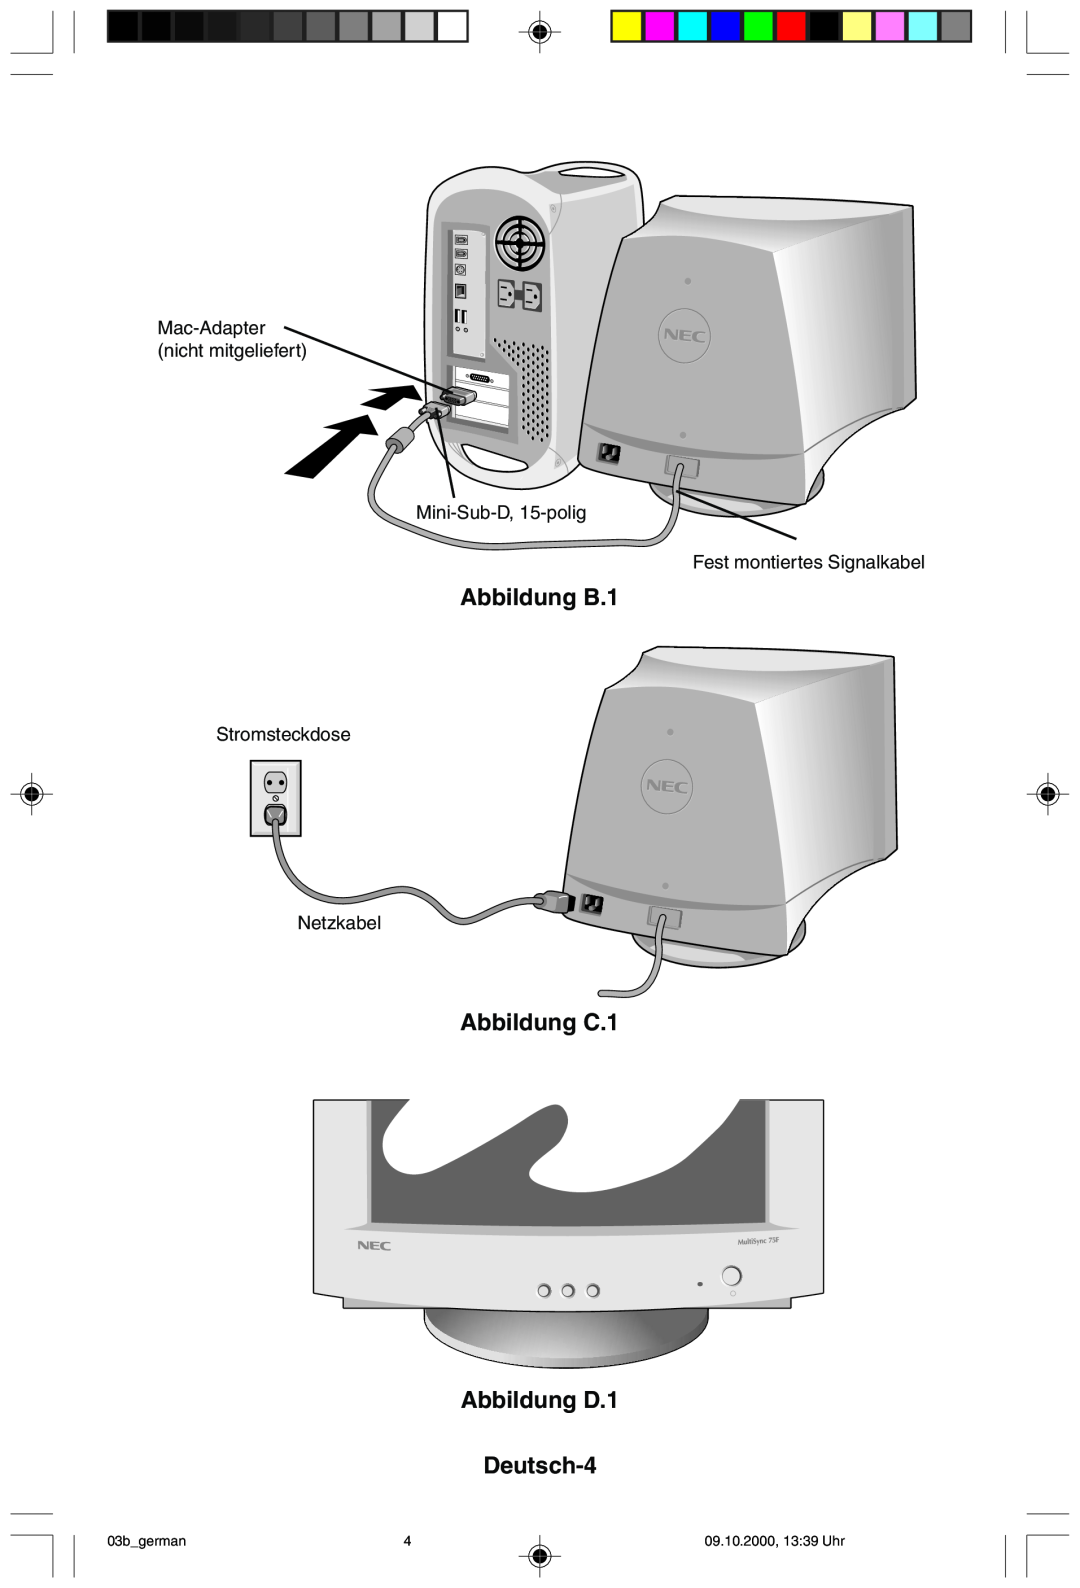 NEC 95F Abbildung B.1, Abbildung C.1 Abbildung D.1 Deutsch-4, Mac-Adapter nicht mitgeliefert Mini-Sub-D, 15-polig 